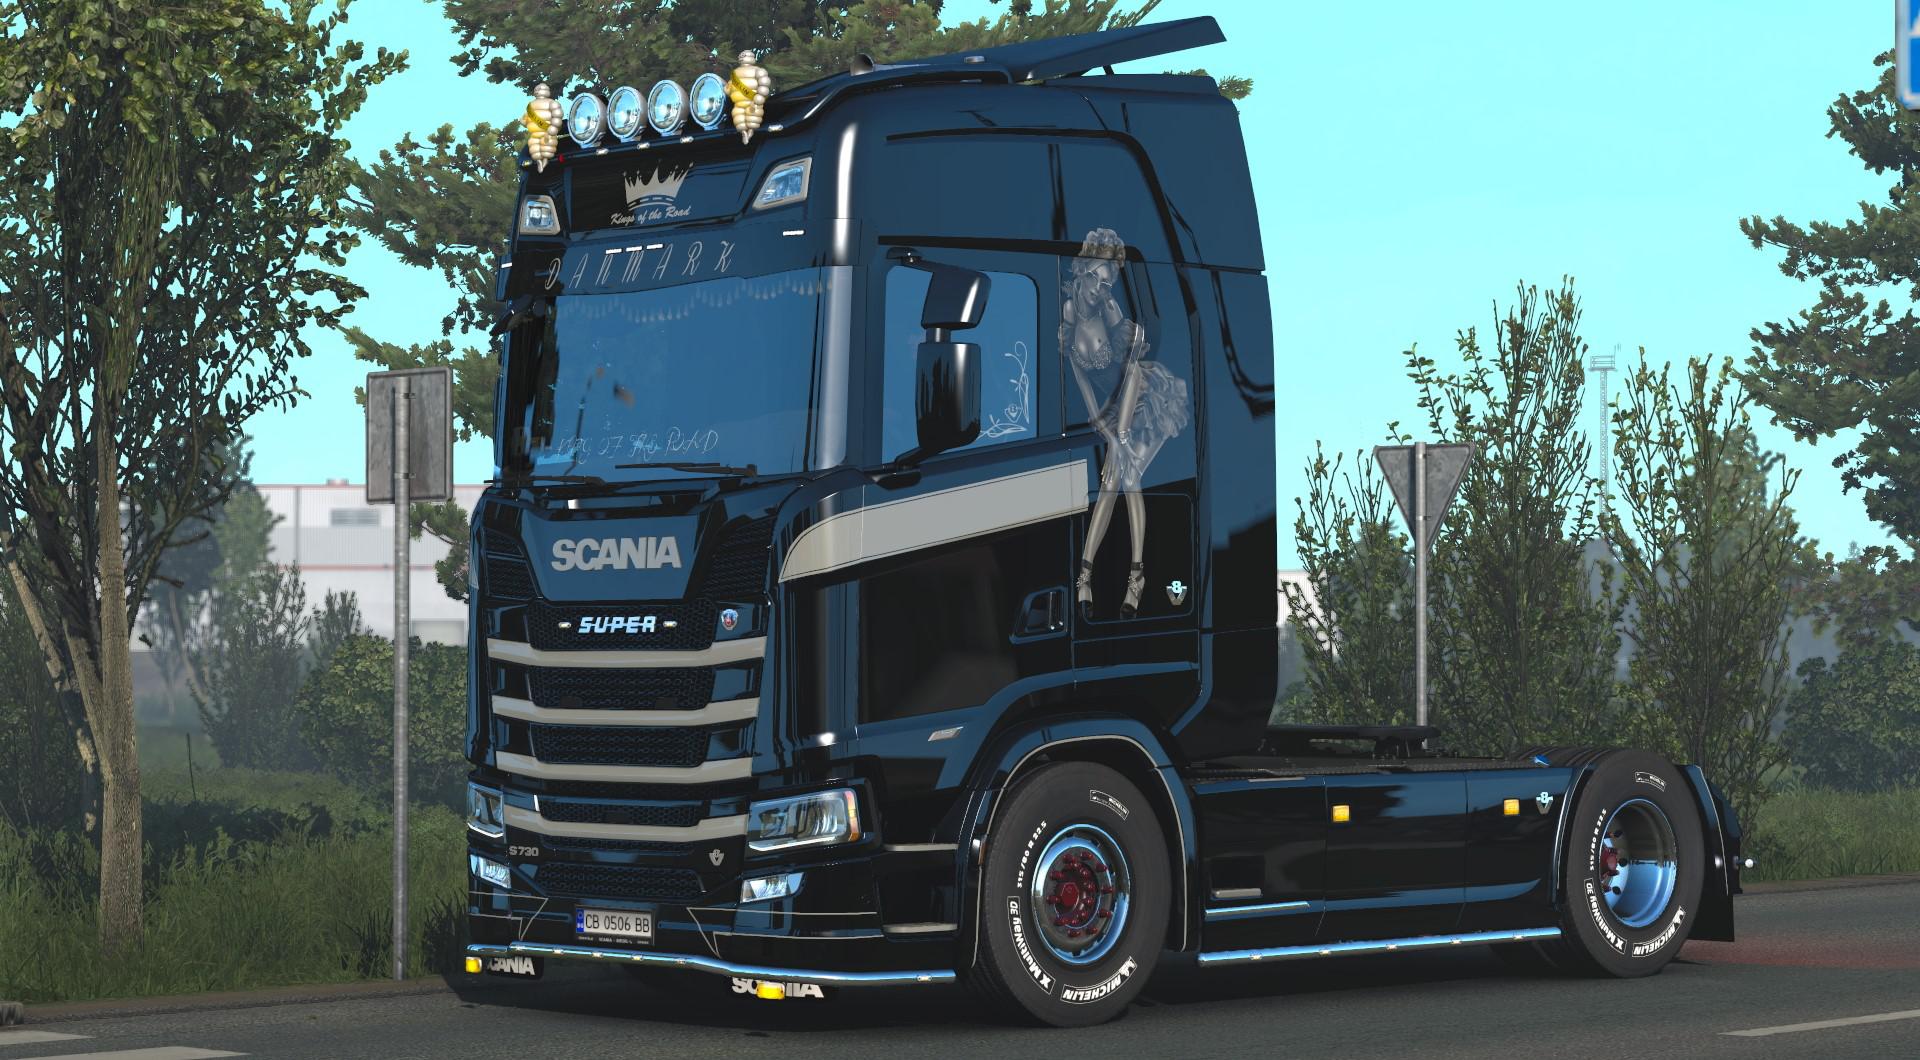 Beauty V8 Fixed For Eugene Scania V12 Ets2 Euro Truck Simulator 2 Mods American Truck 3070